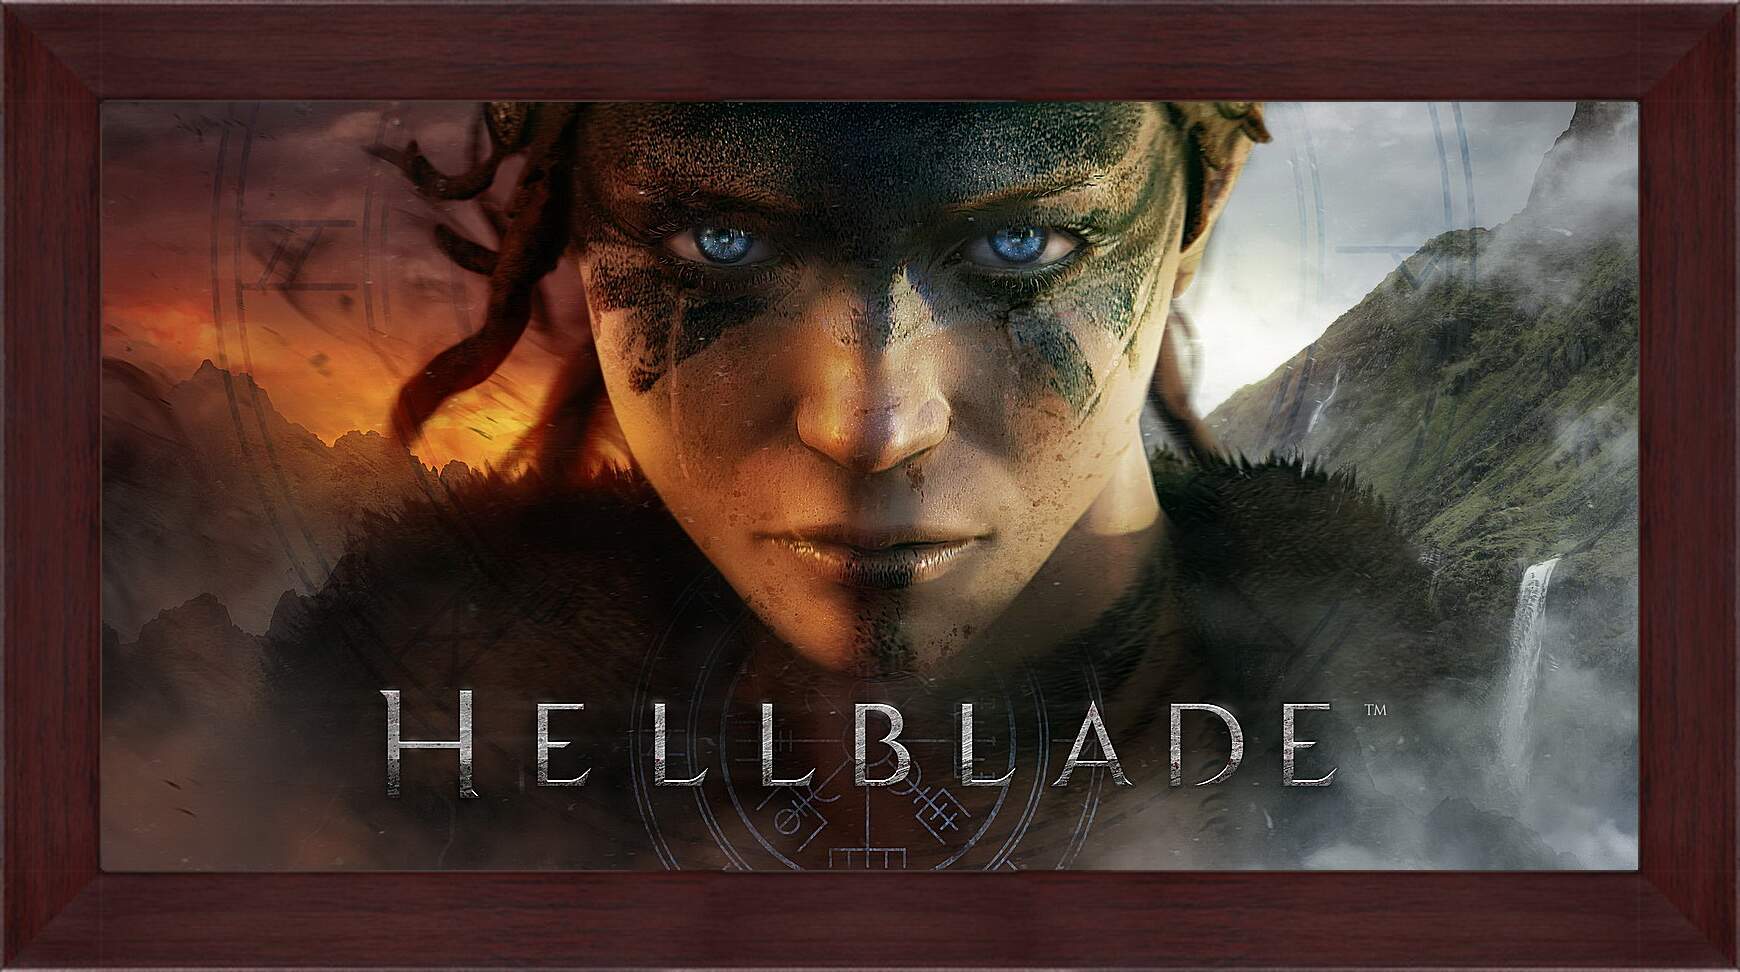 Картина в раме - Hellblade
